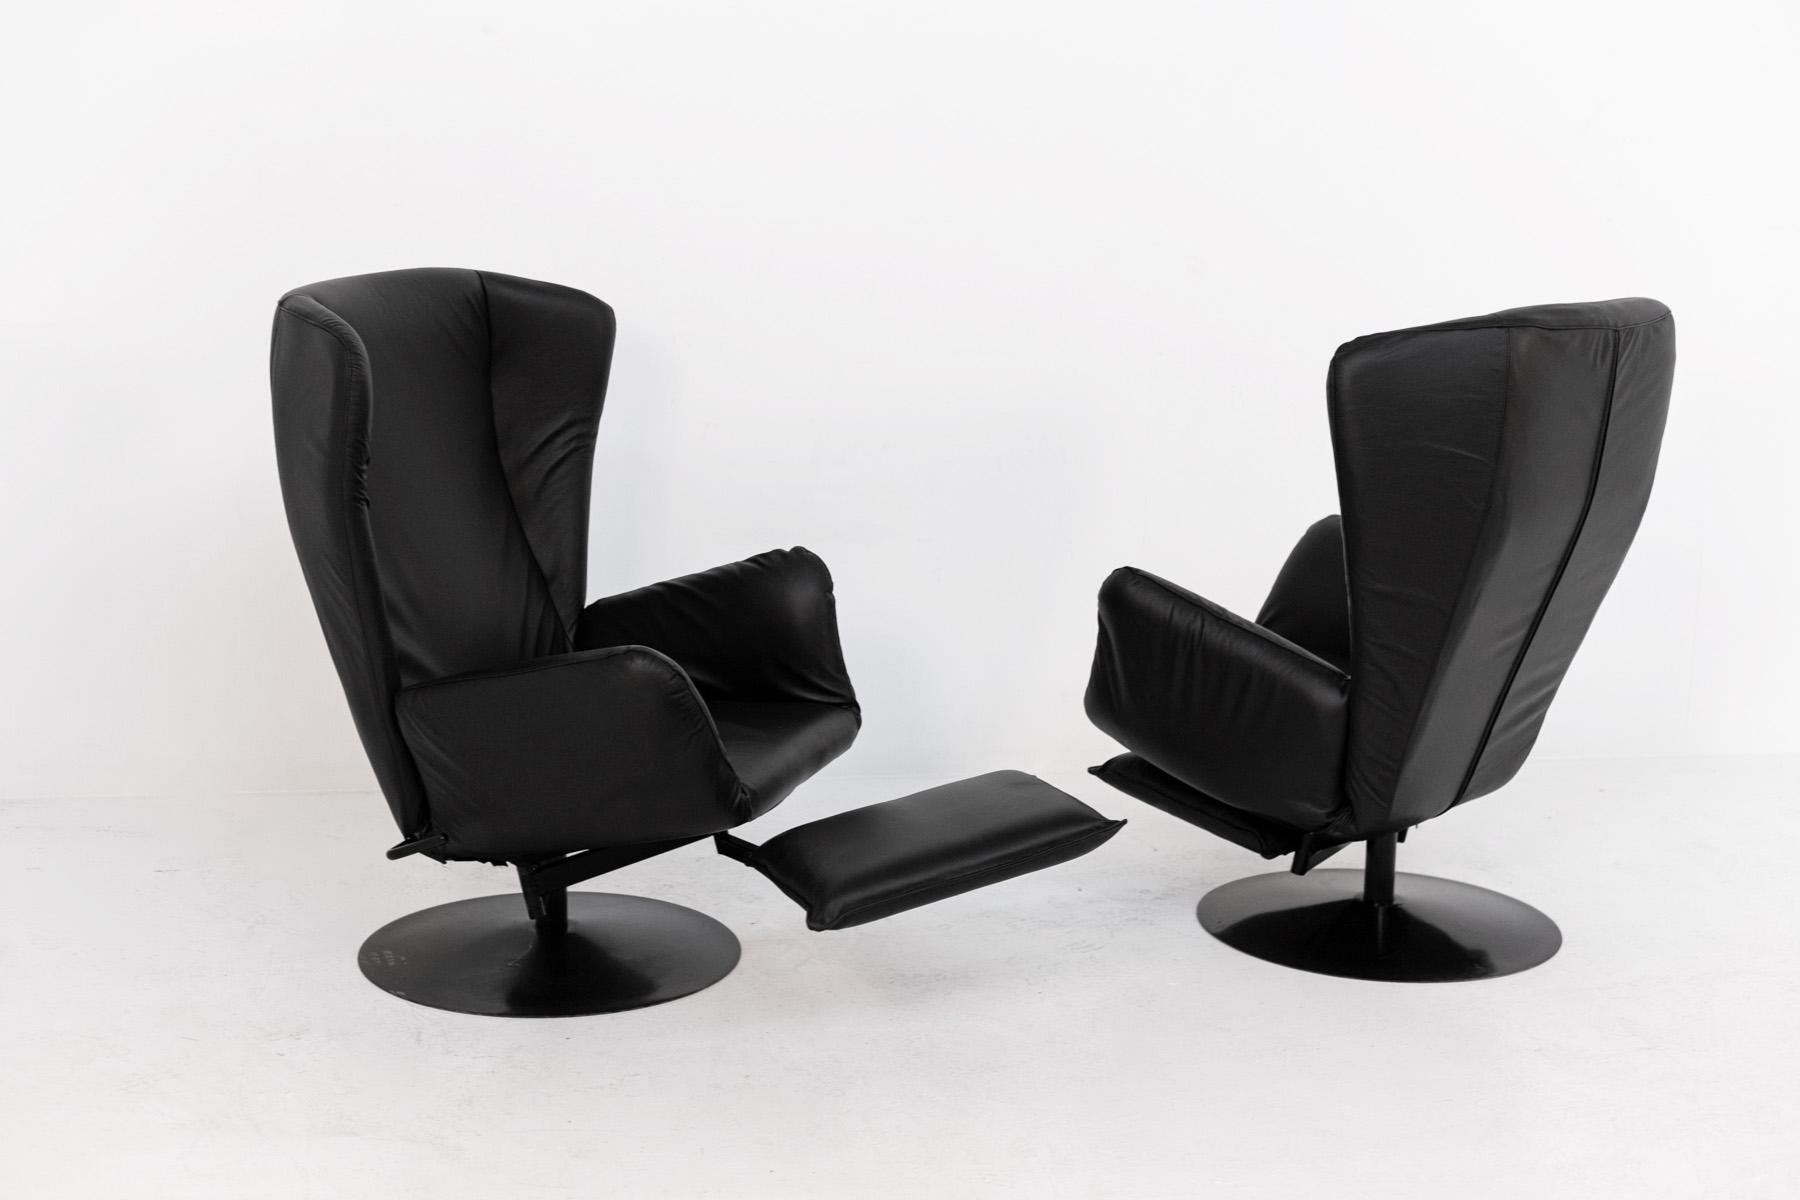 Paire de fauteuils excentriques en cuir noir des années 1970. 
La paire de fauteuils a été récemment restaurée. Les fauteuils ont plusieurs particularités, notamment les oreilles au-dessus du dossier. Autre particularité, le repose-pieds à coussin